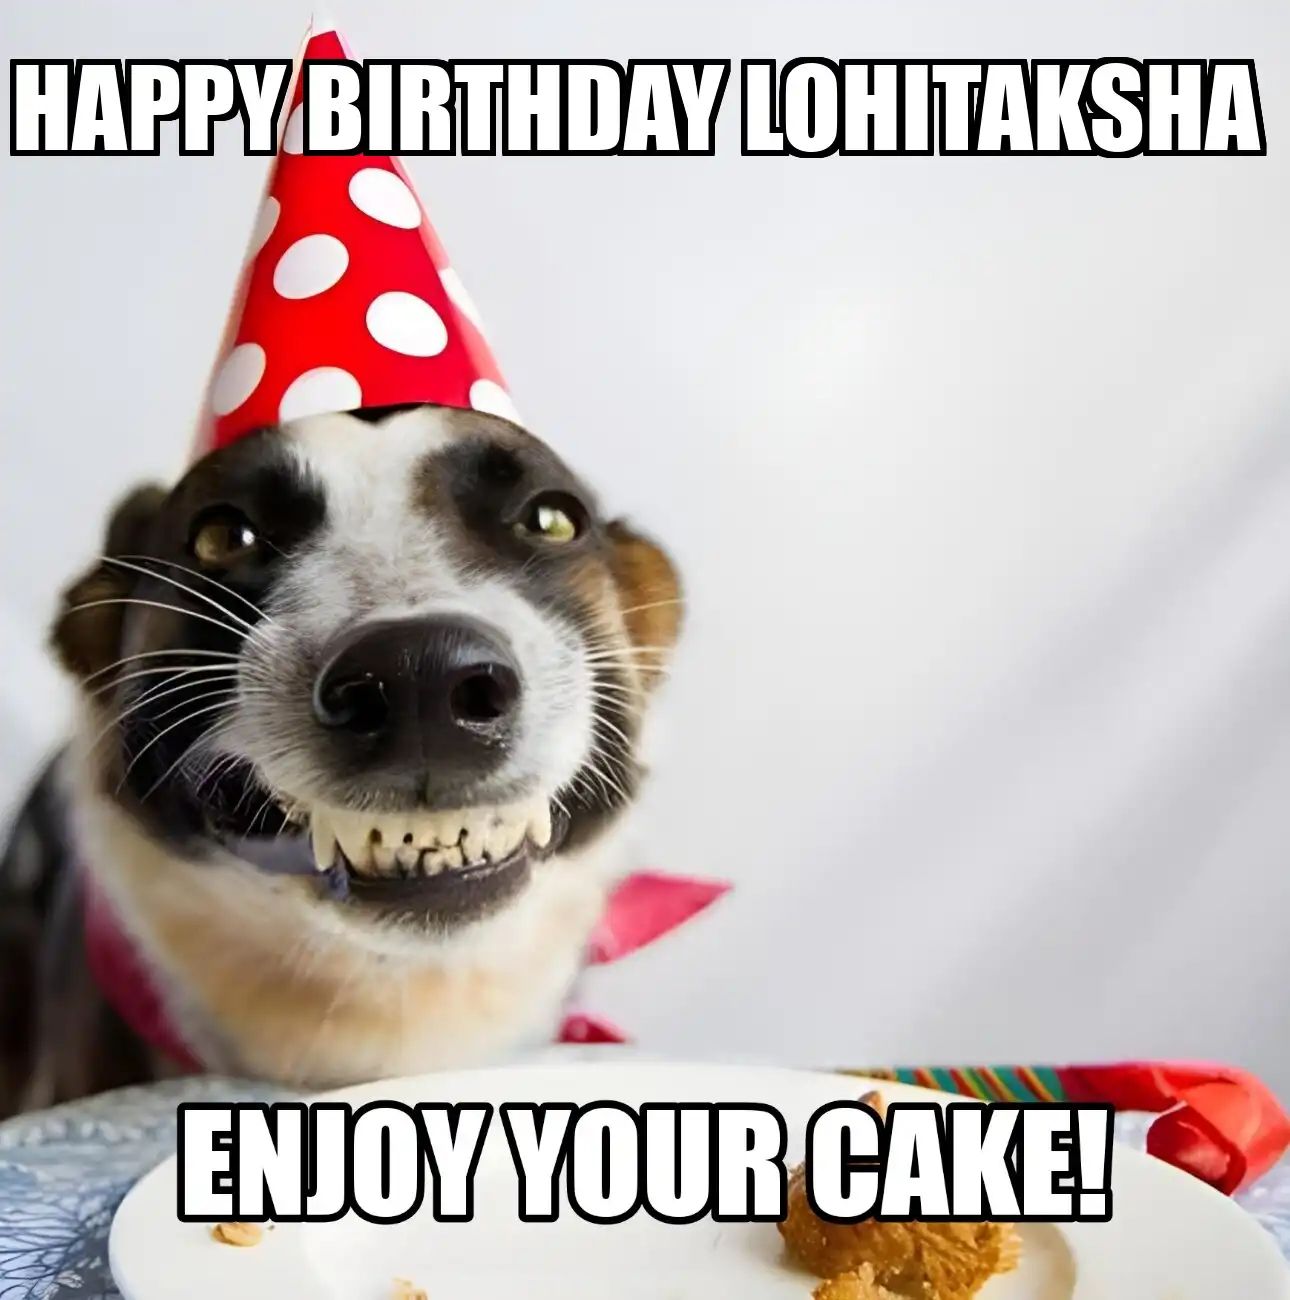 Happy Birthday Lohitaksha Enjoy Your Cake Dog Meme